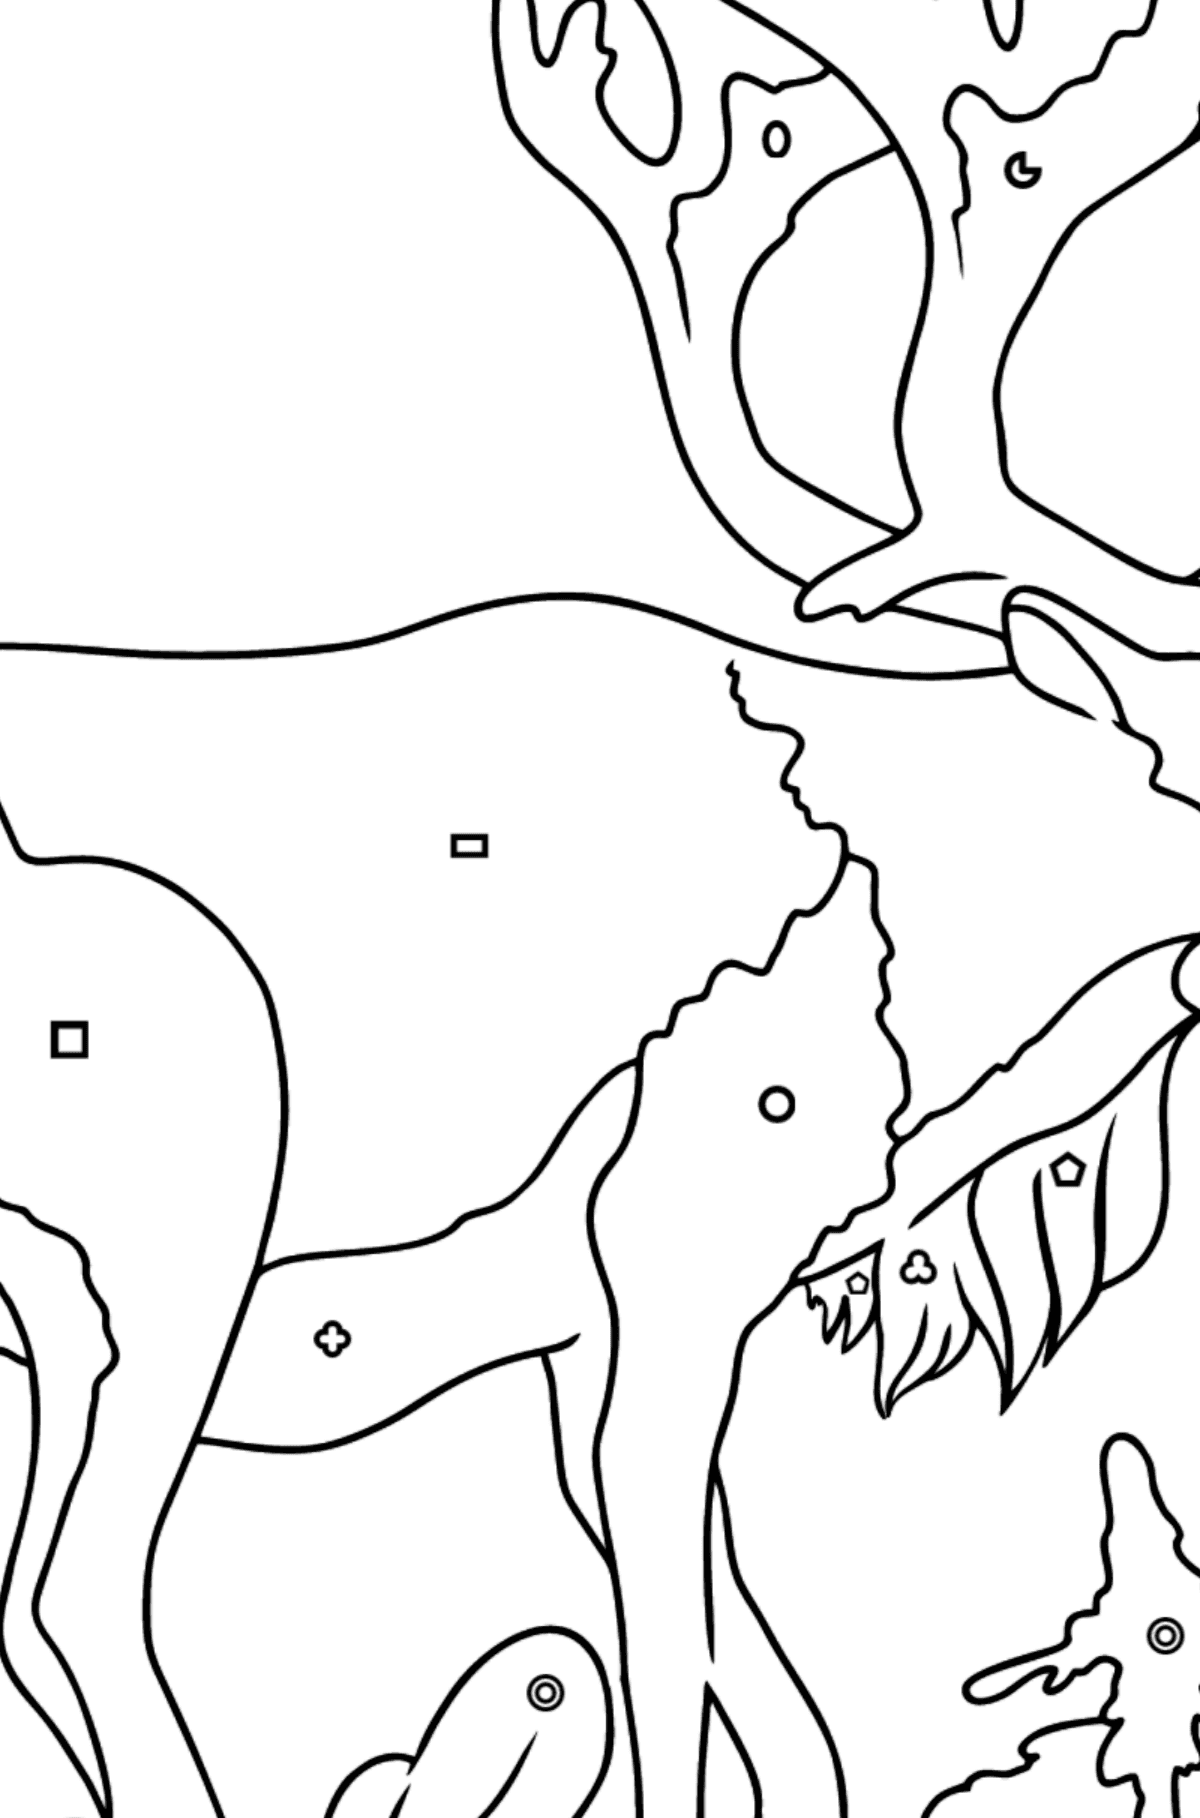 Tegning til farvning hjorte til børn - Farvelægning af geometriske figurer for børn